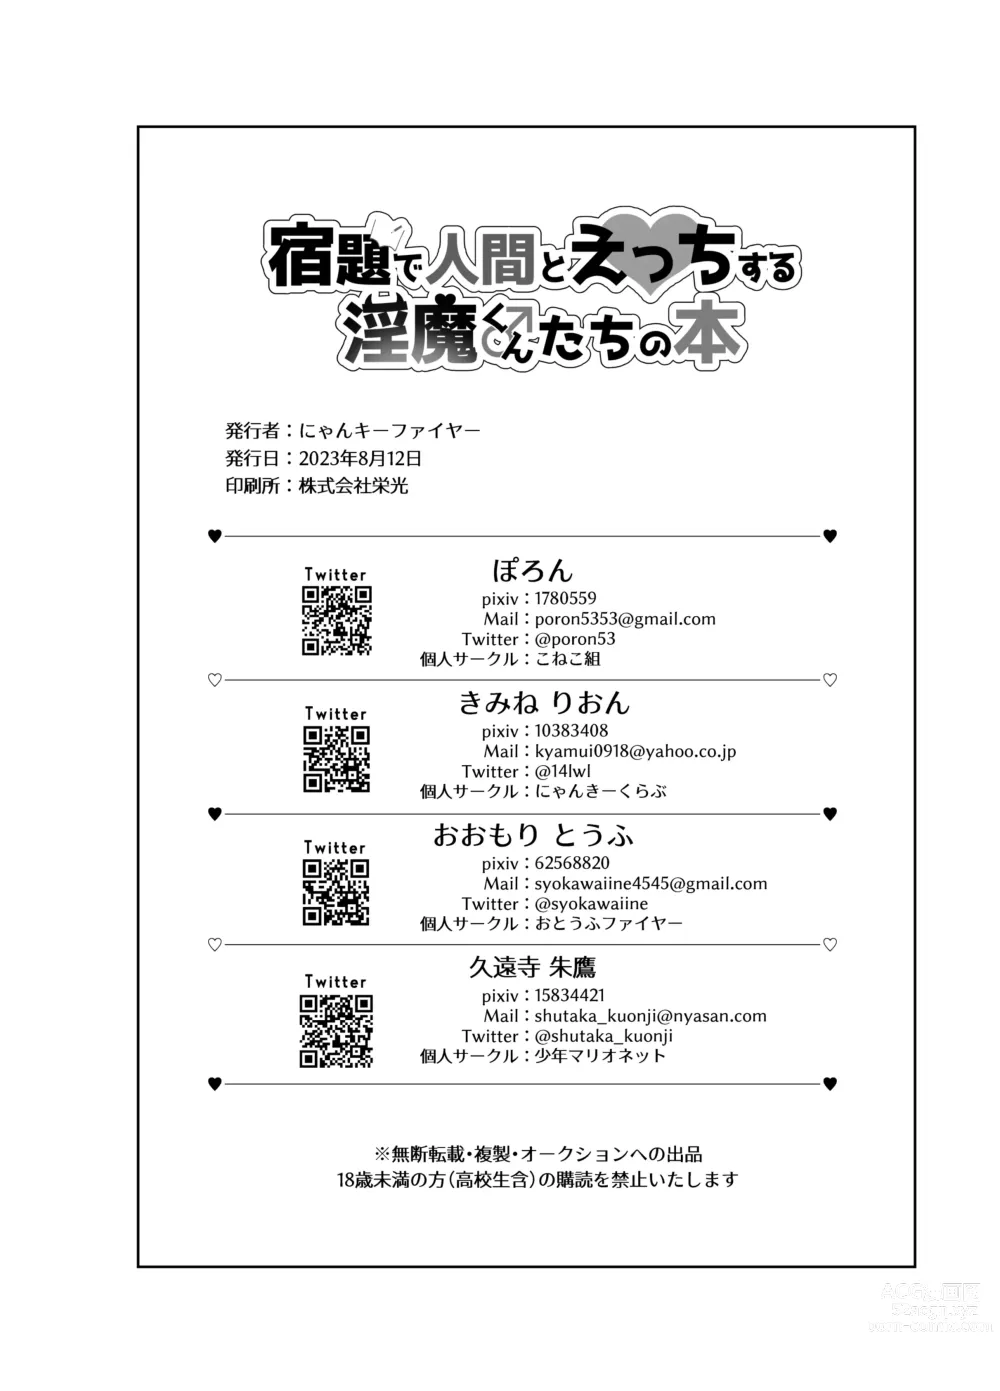 Page 18 of doujinshi 俺とお勉強しよっ!